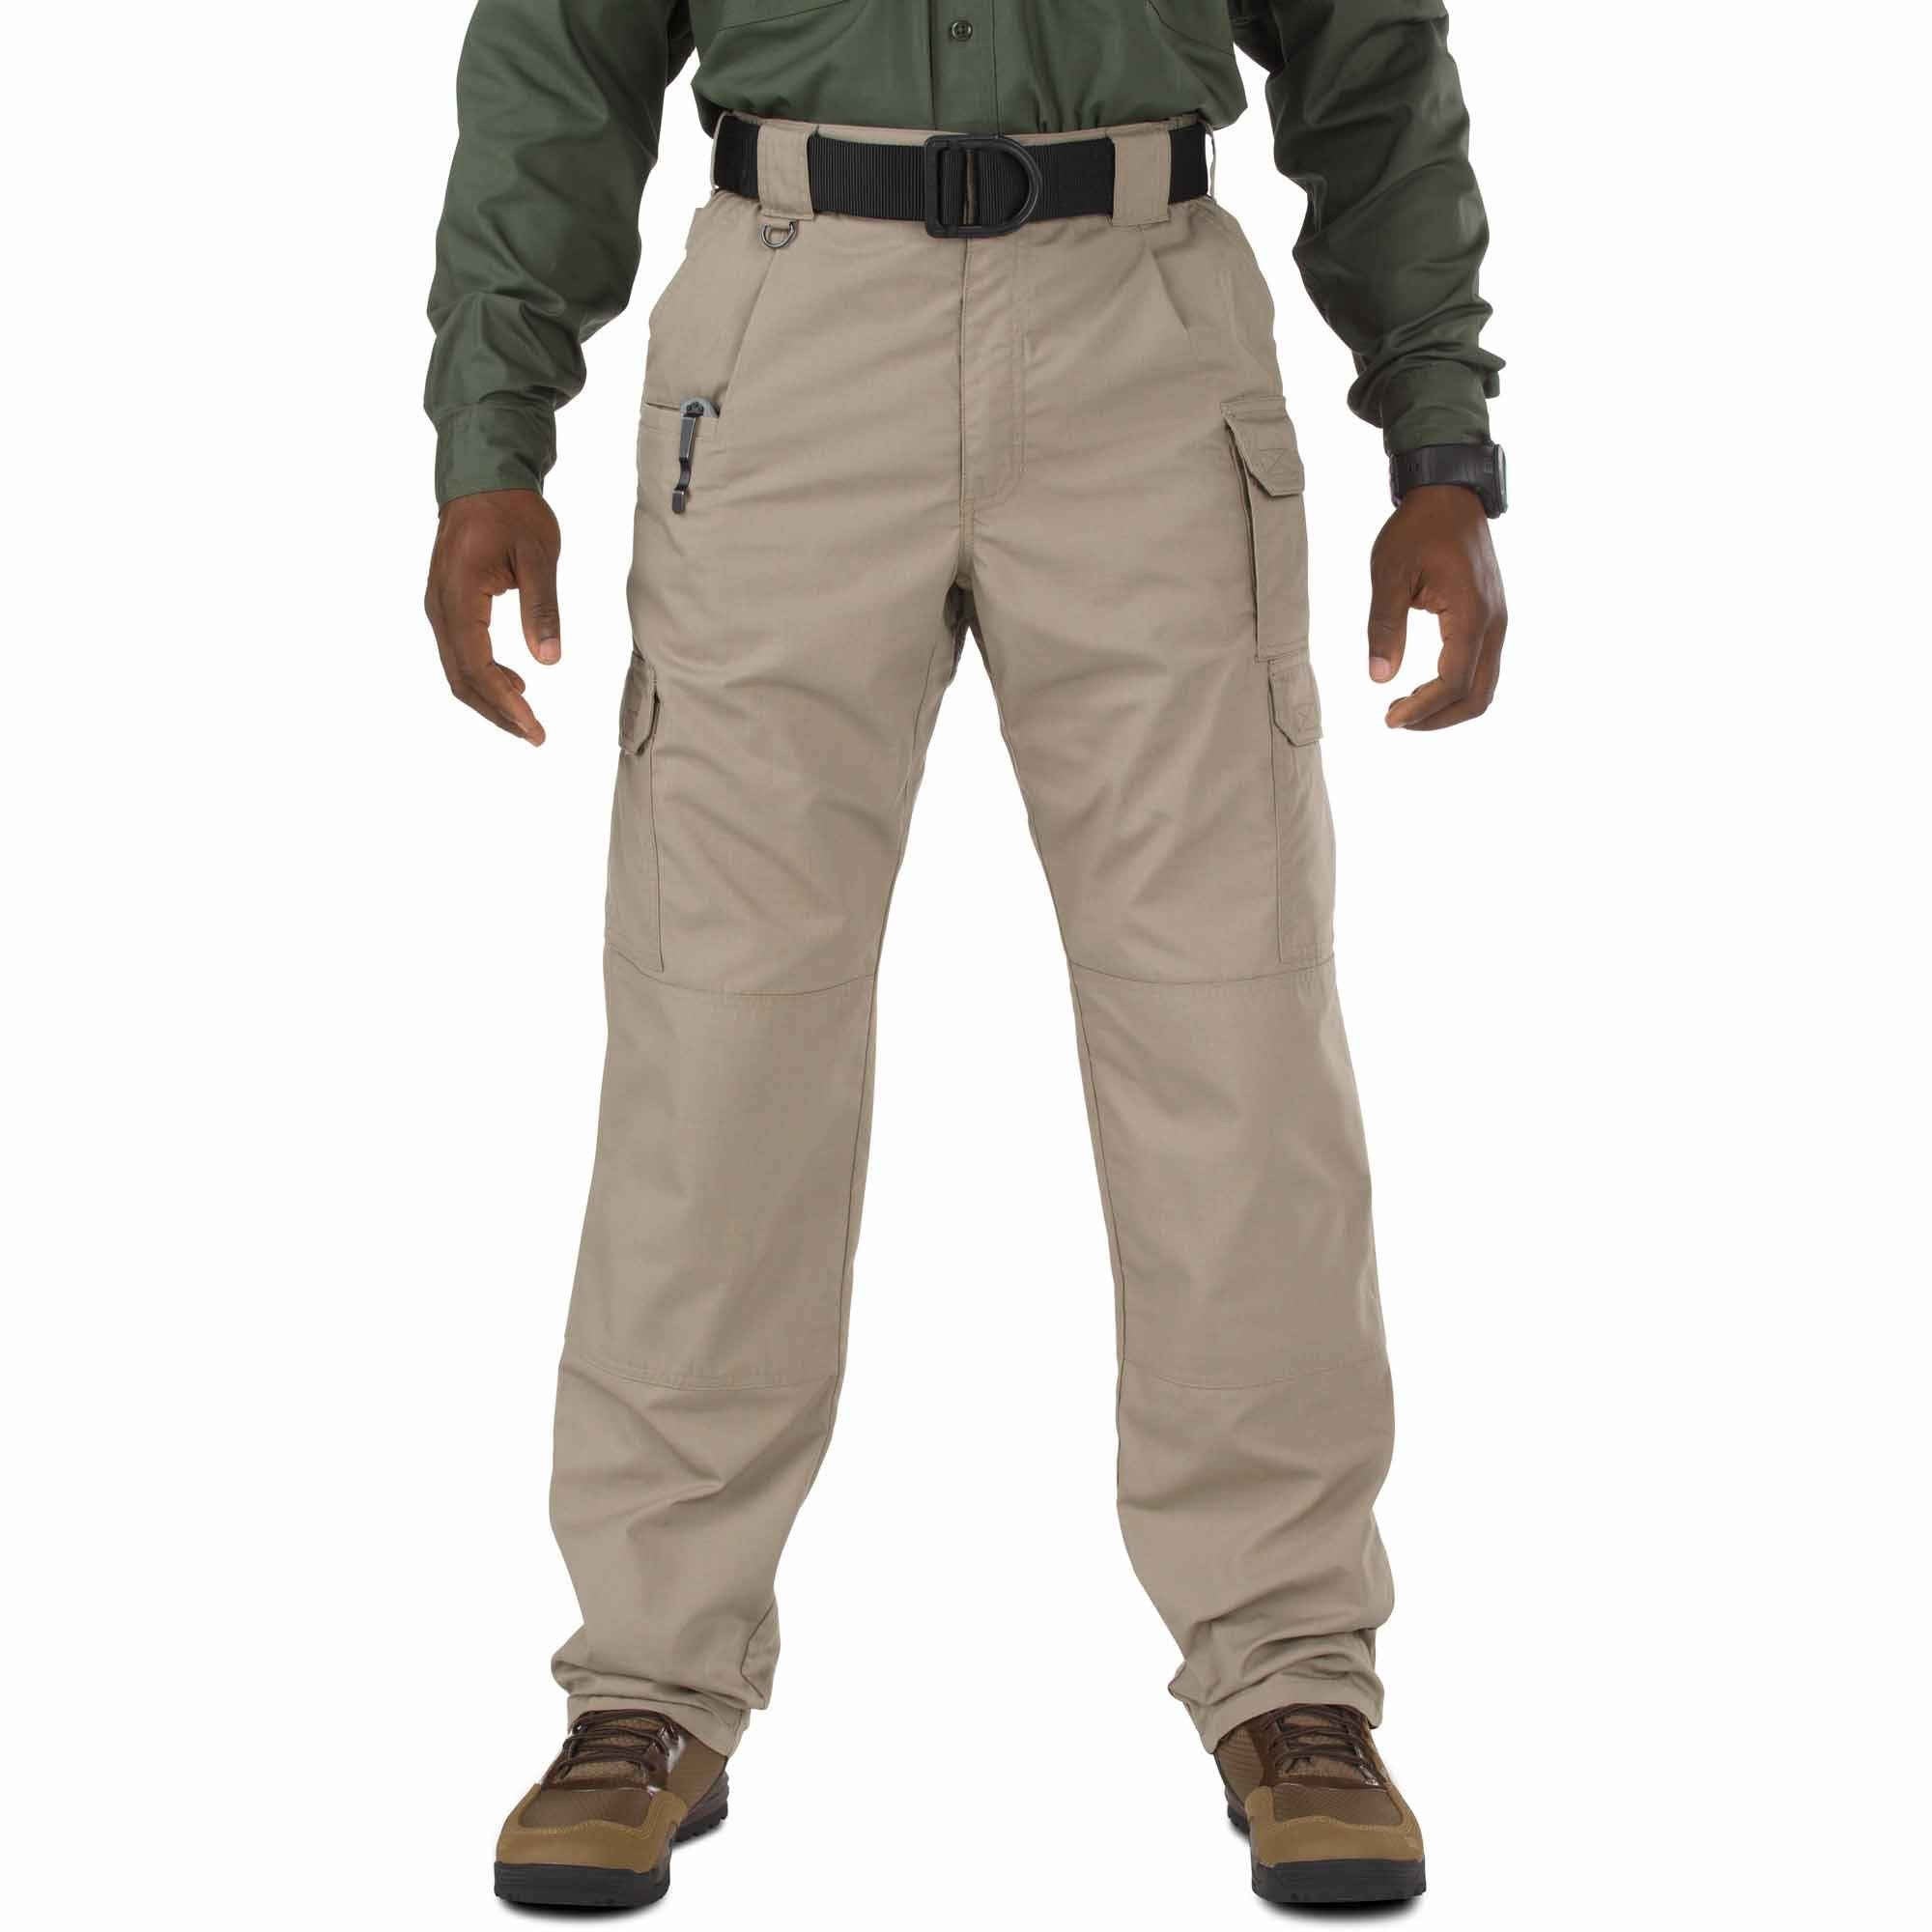 5.11 Tactical Taclite Pro Pants - Stone Pants 5.11 Tactical 28 30 Tactical Gear Supplier Tactical Distributors Australia